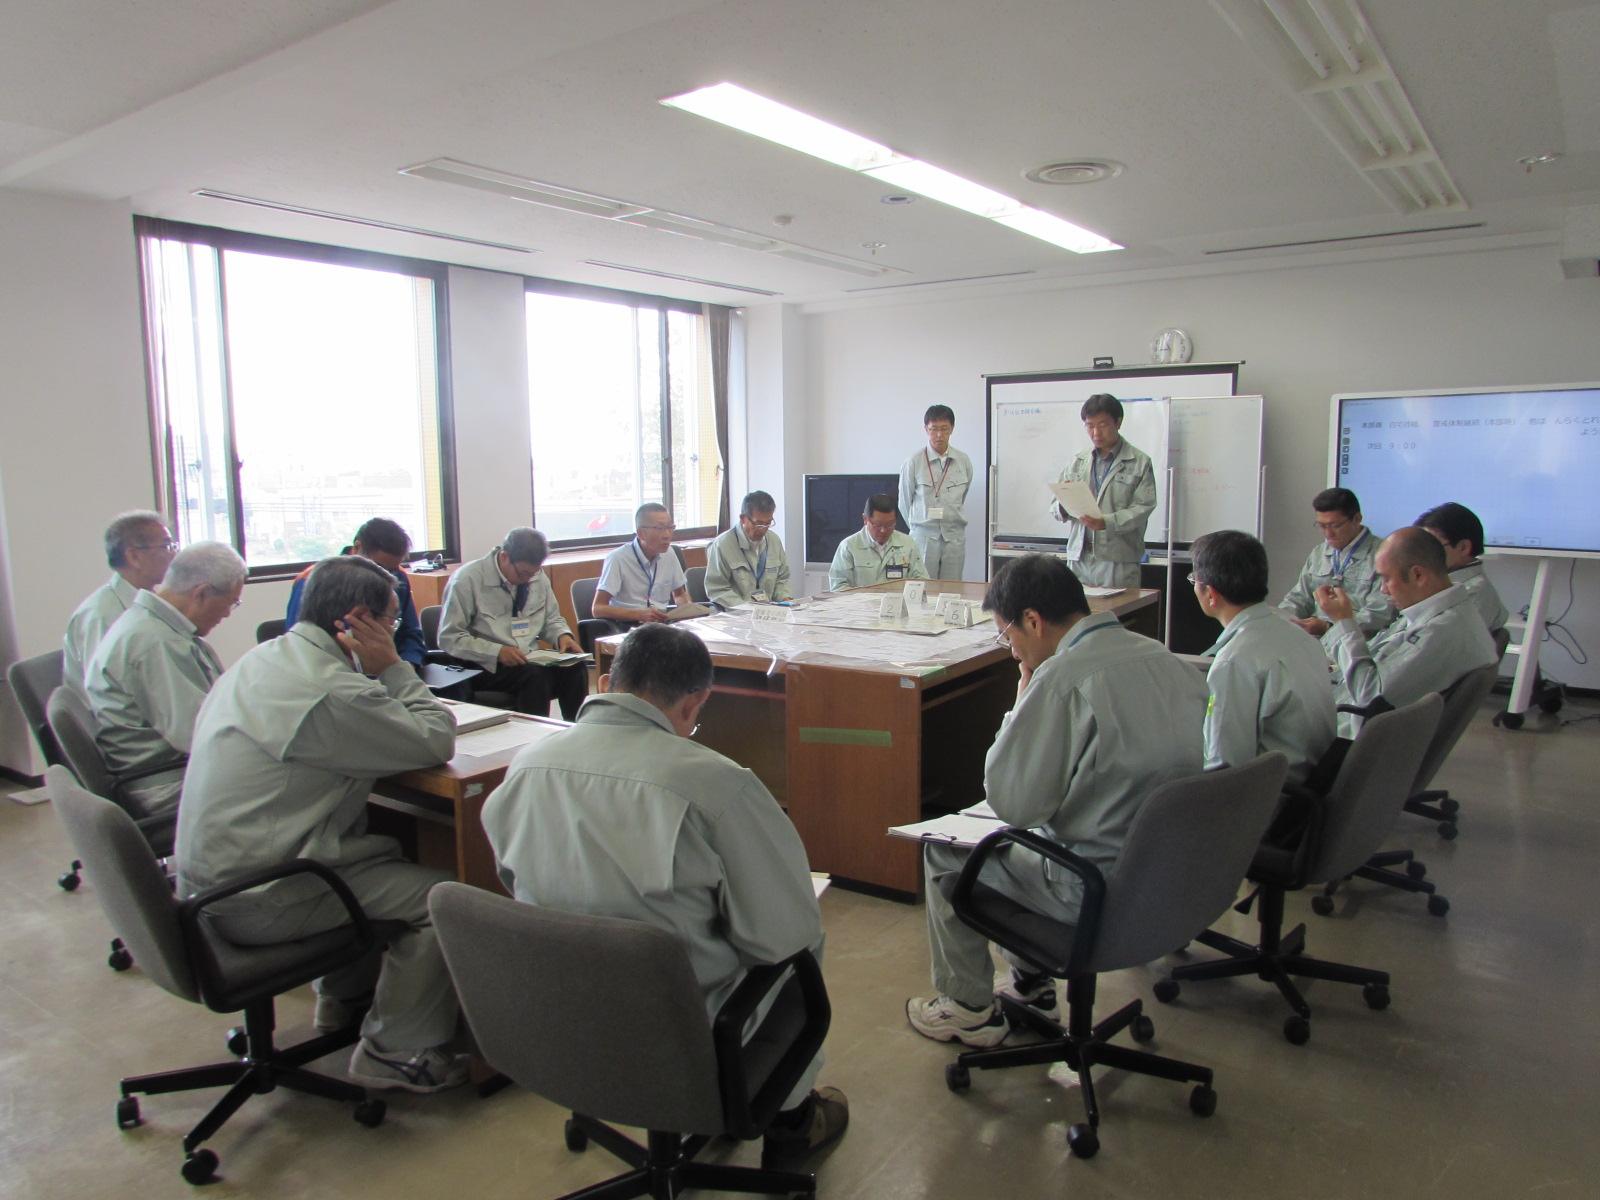 北海道胆振東部地震に伴いホワイトボードを使って災害の対応を話し合っている写真2